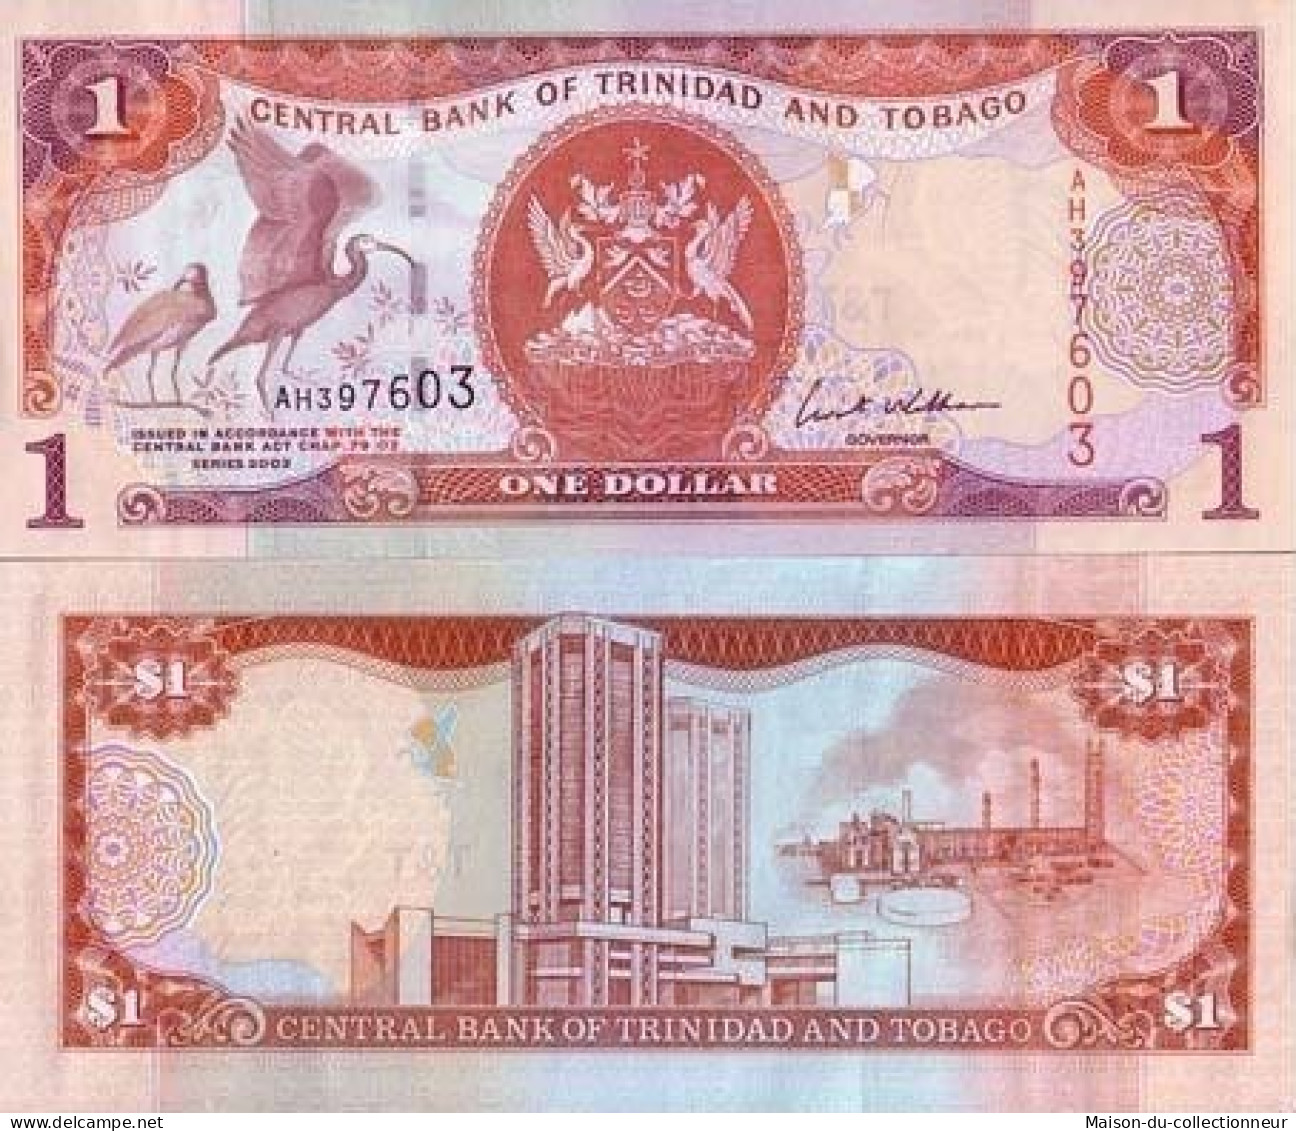 Billets De Banque Trinite & Tobago Pk N° 46 - 1 Dollars - Trinidad & Tobago